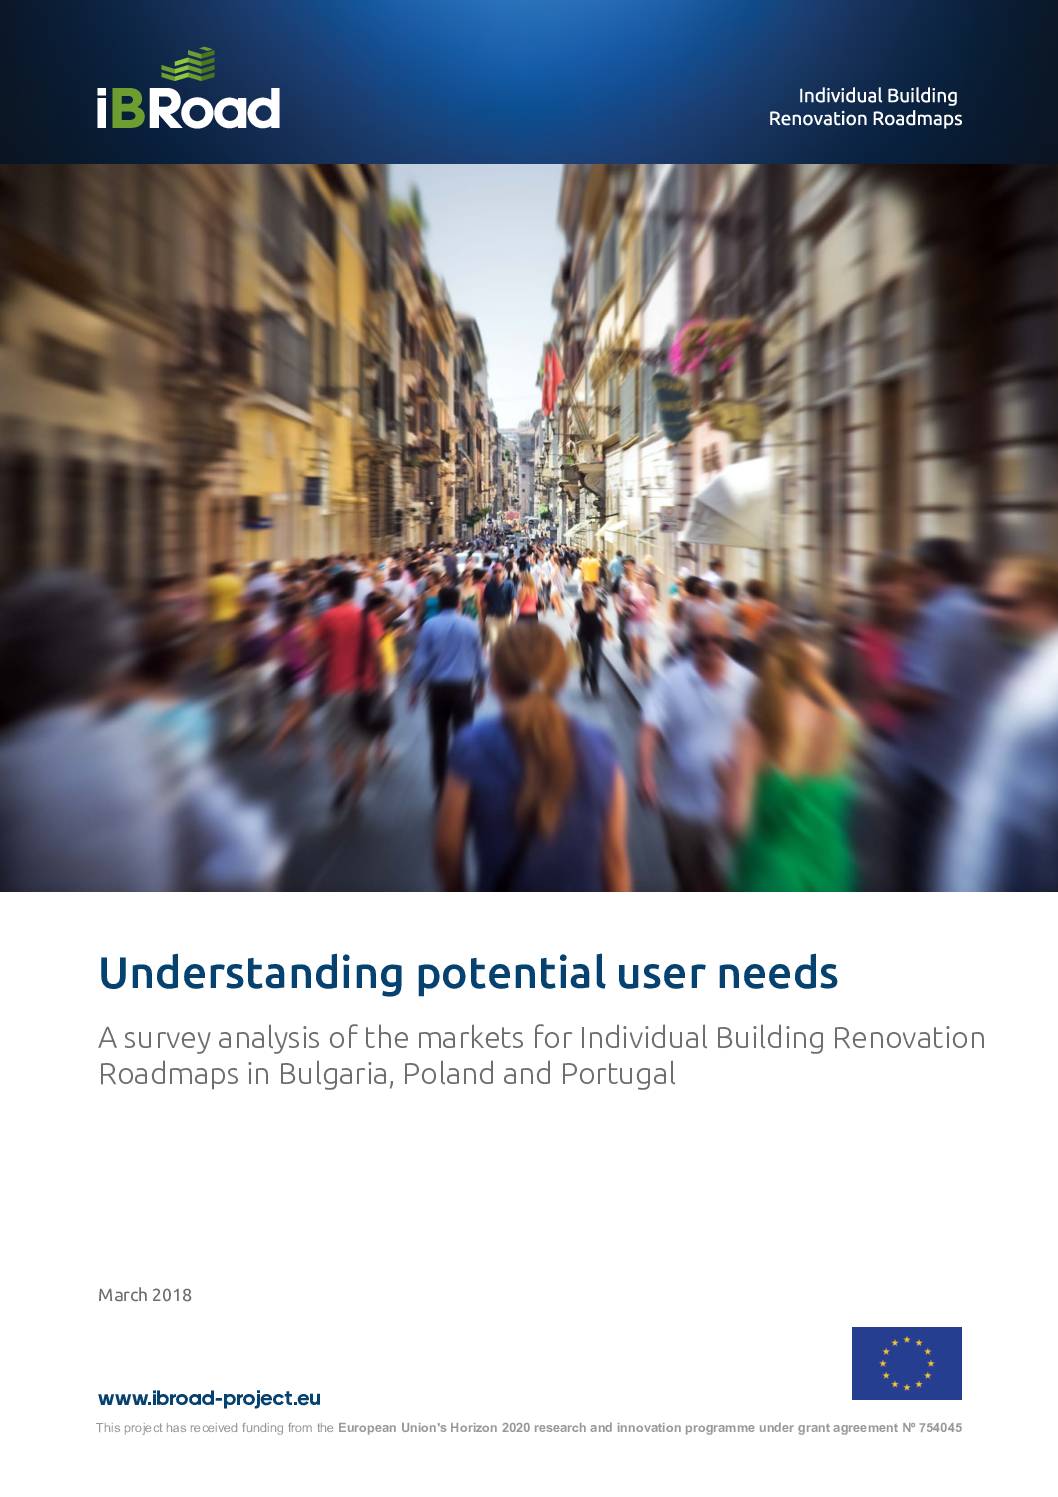 Understanding Potential User Needs